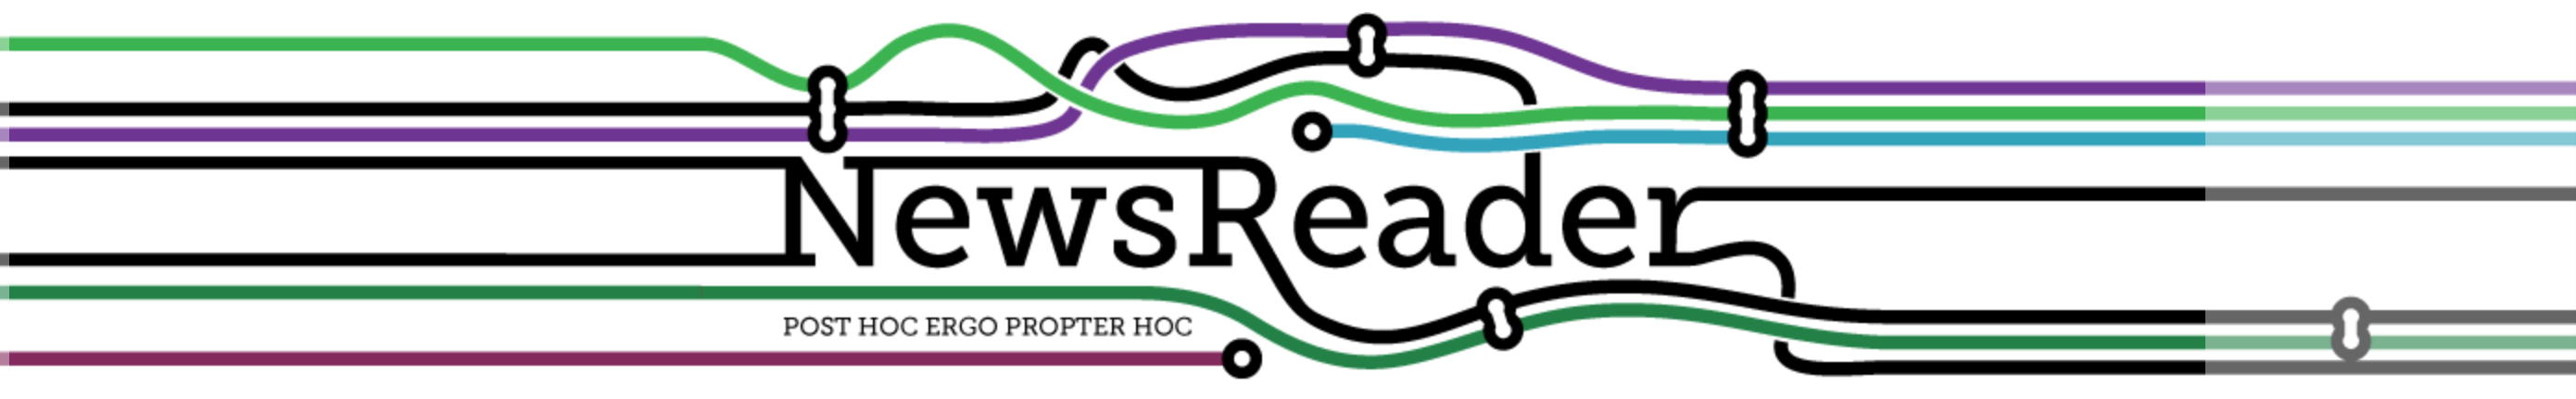 NewsReader_Logo